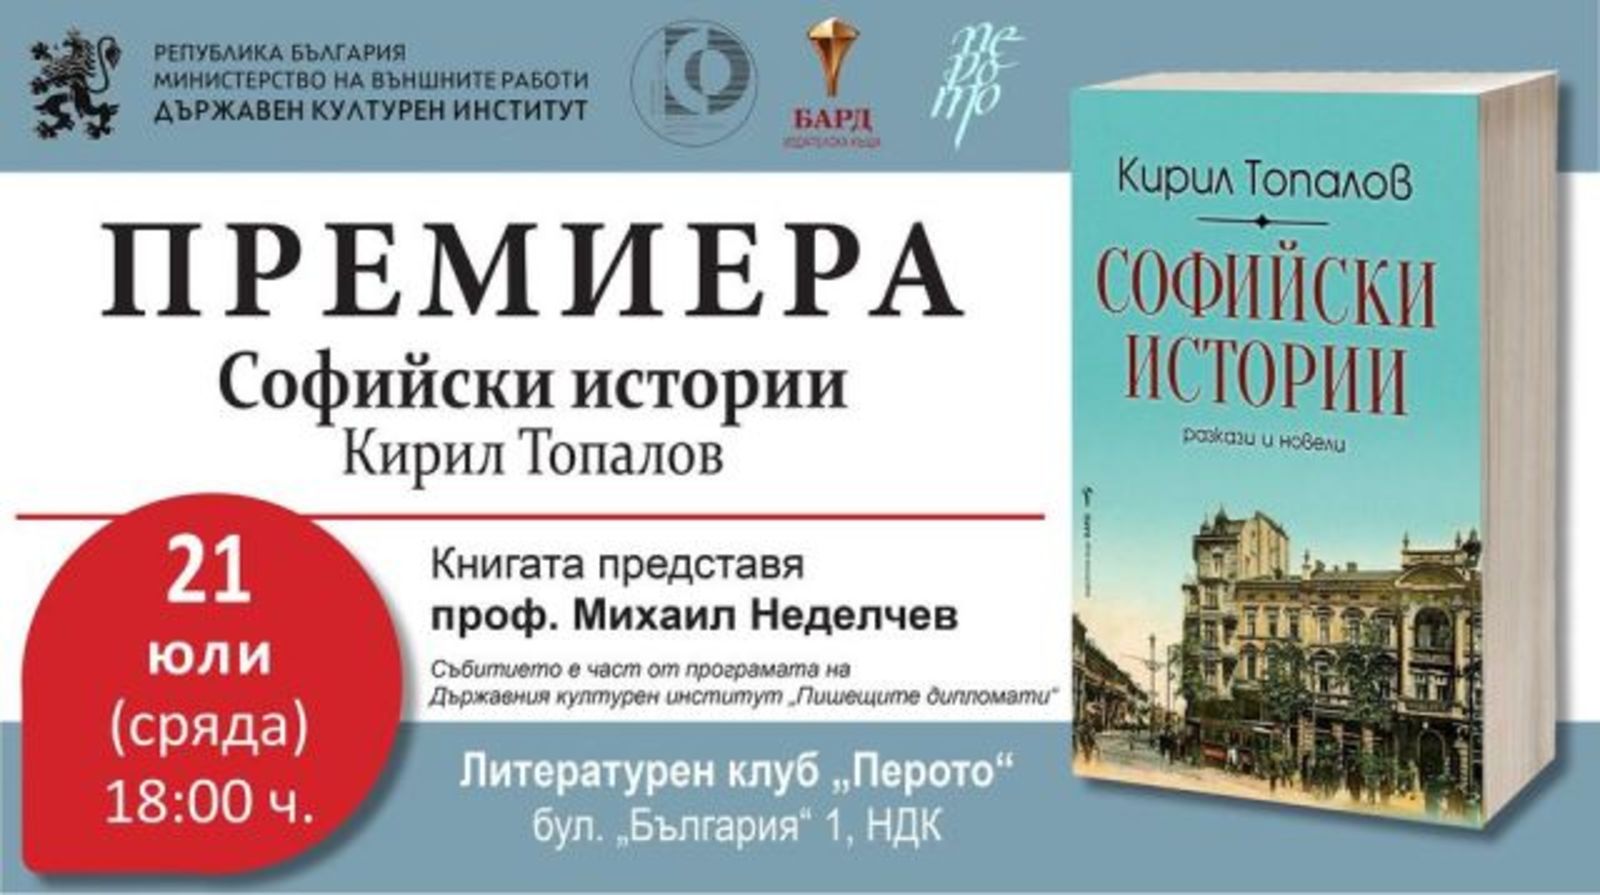 Premiere of Prof. Kiril Topalov's book 